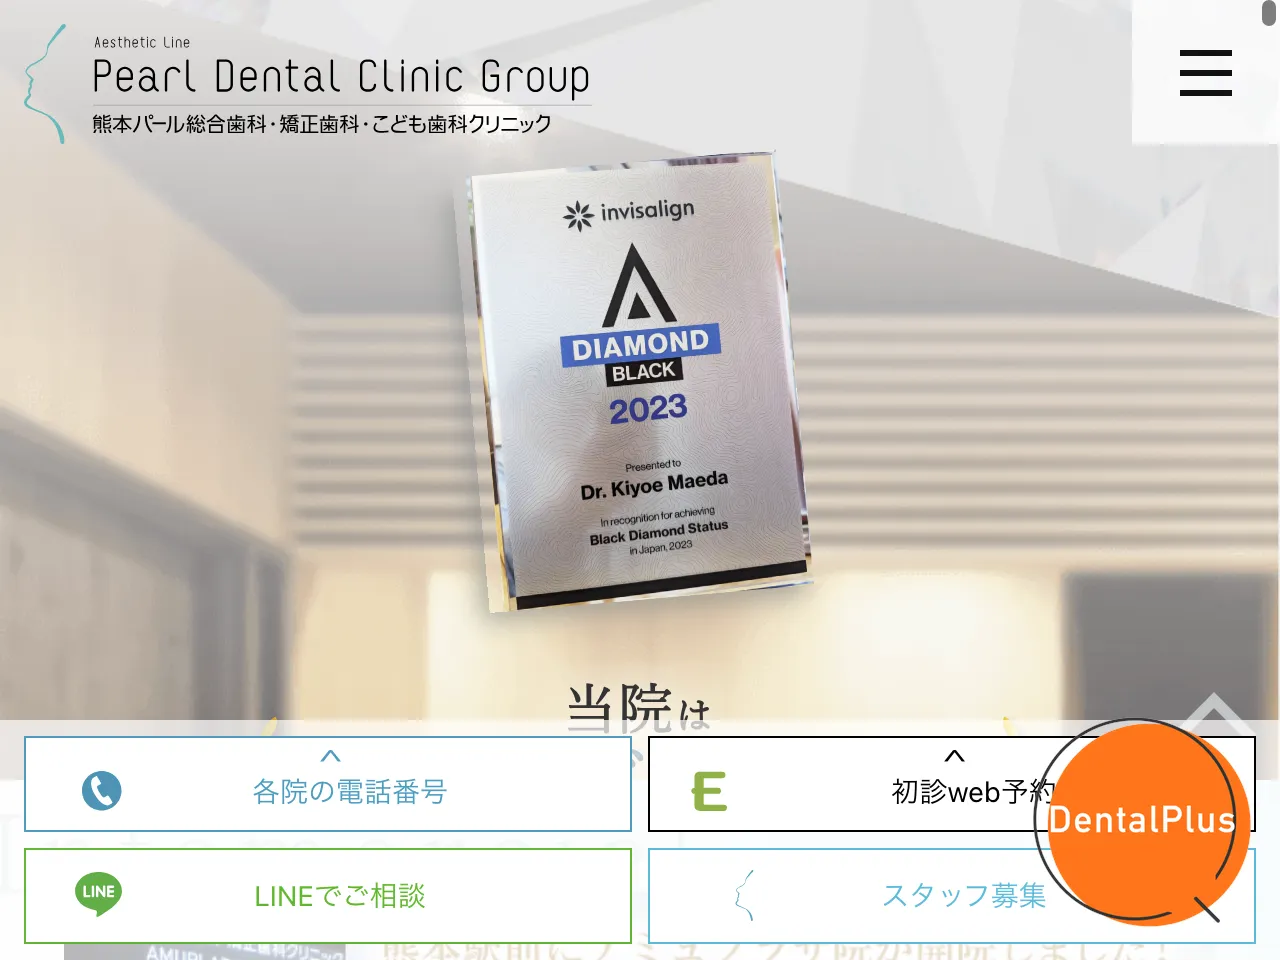 熊本 パール総合歯科・ 矯正歯科 ・こども歯科クリニック アミュプラザ院のウェブサイト